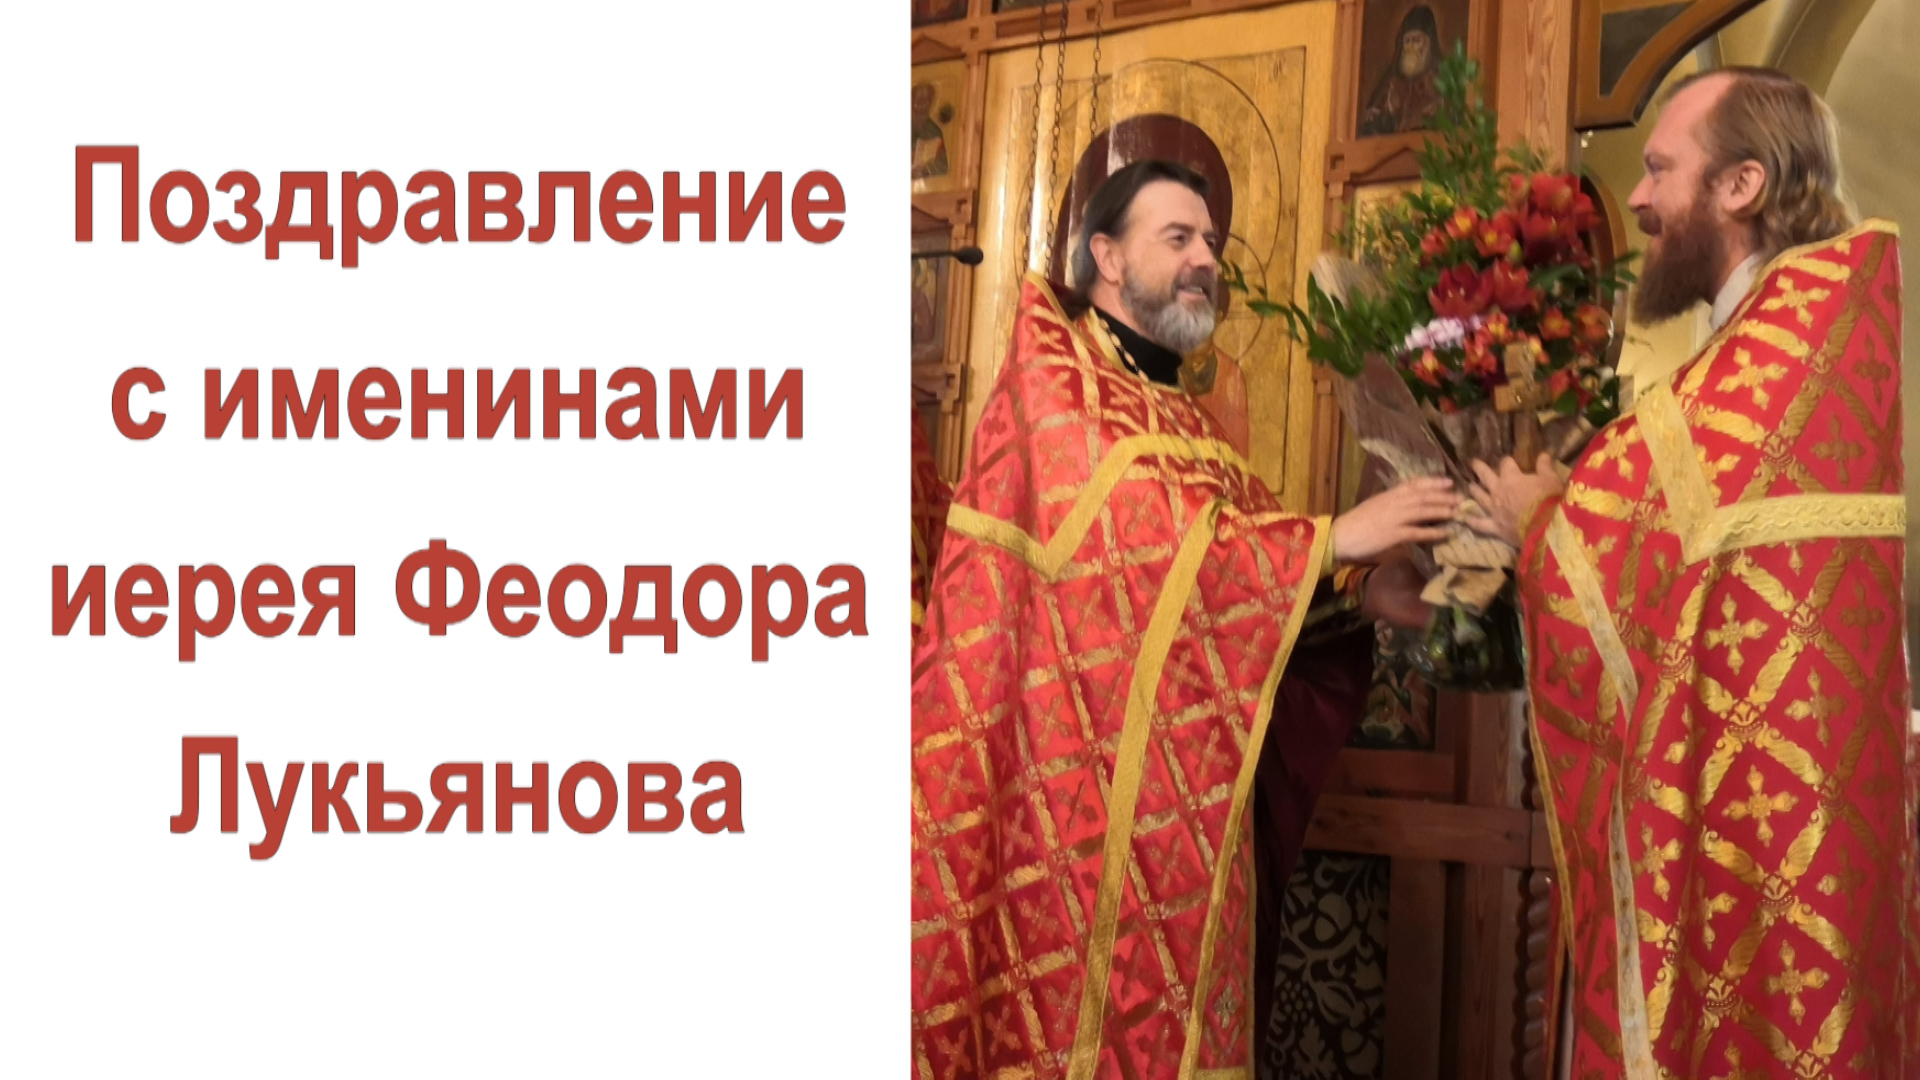 Поздравление с именинами иерея Феодора Лукьянова